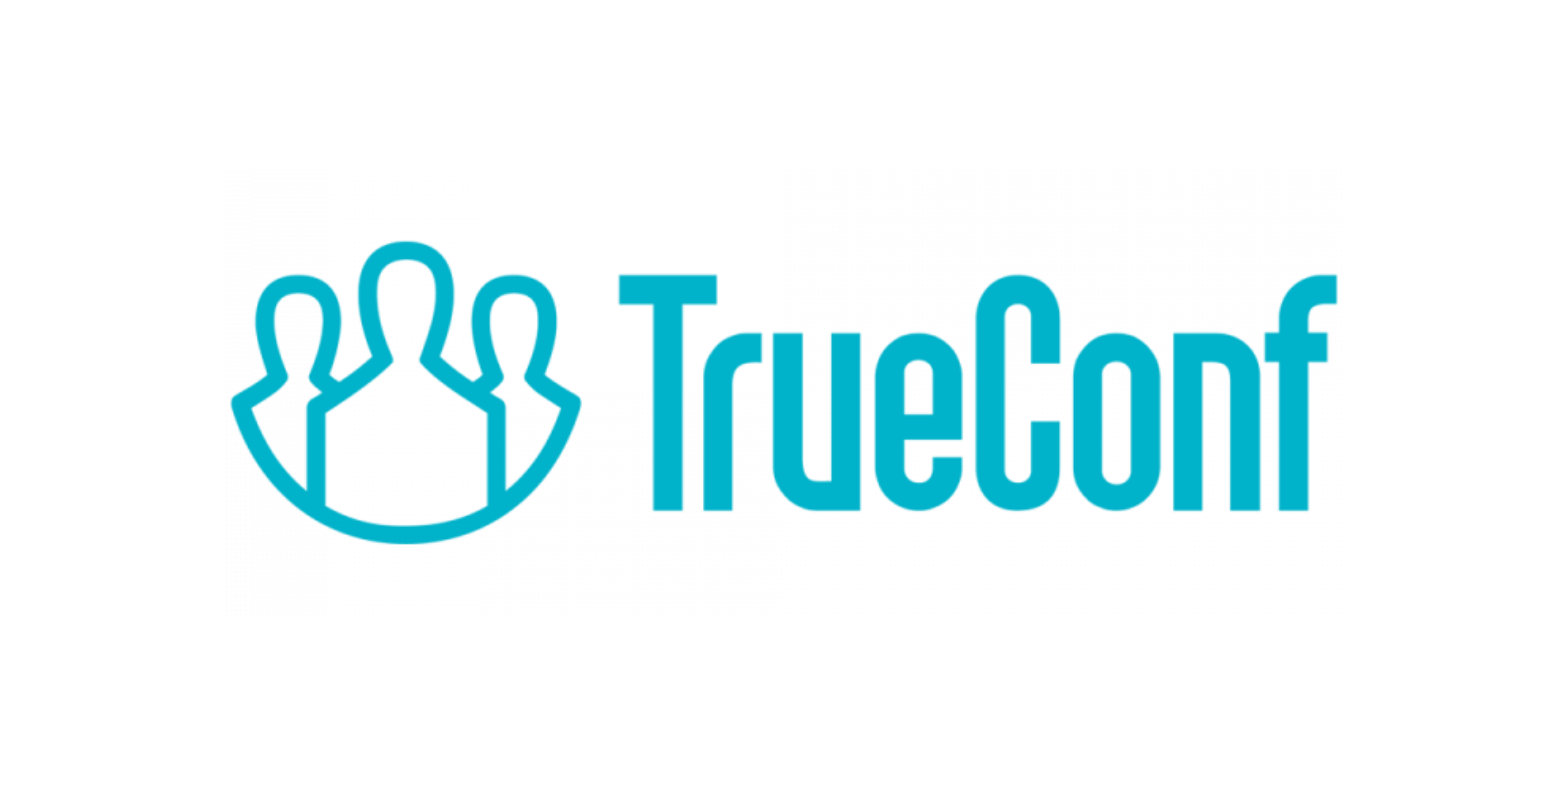 TrueConf Server    1   2-13 -